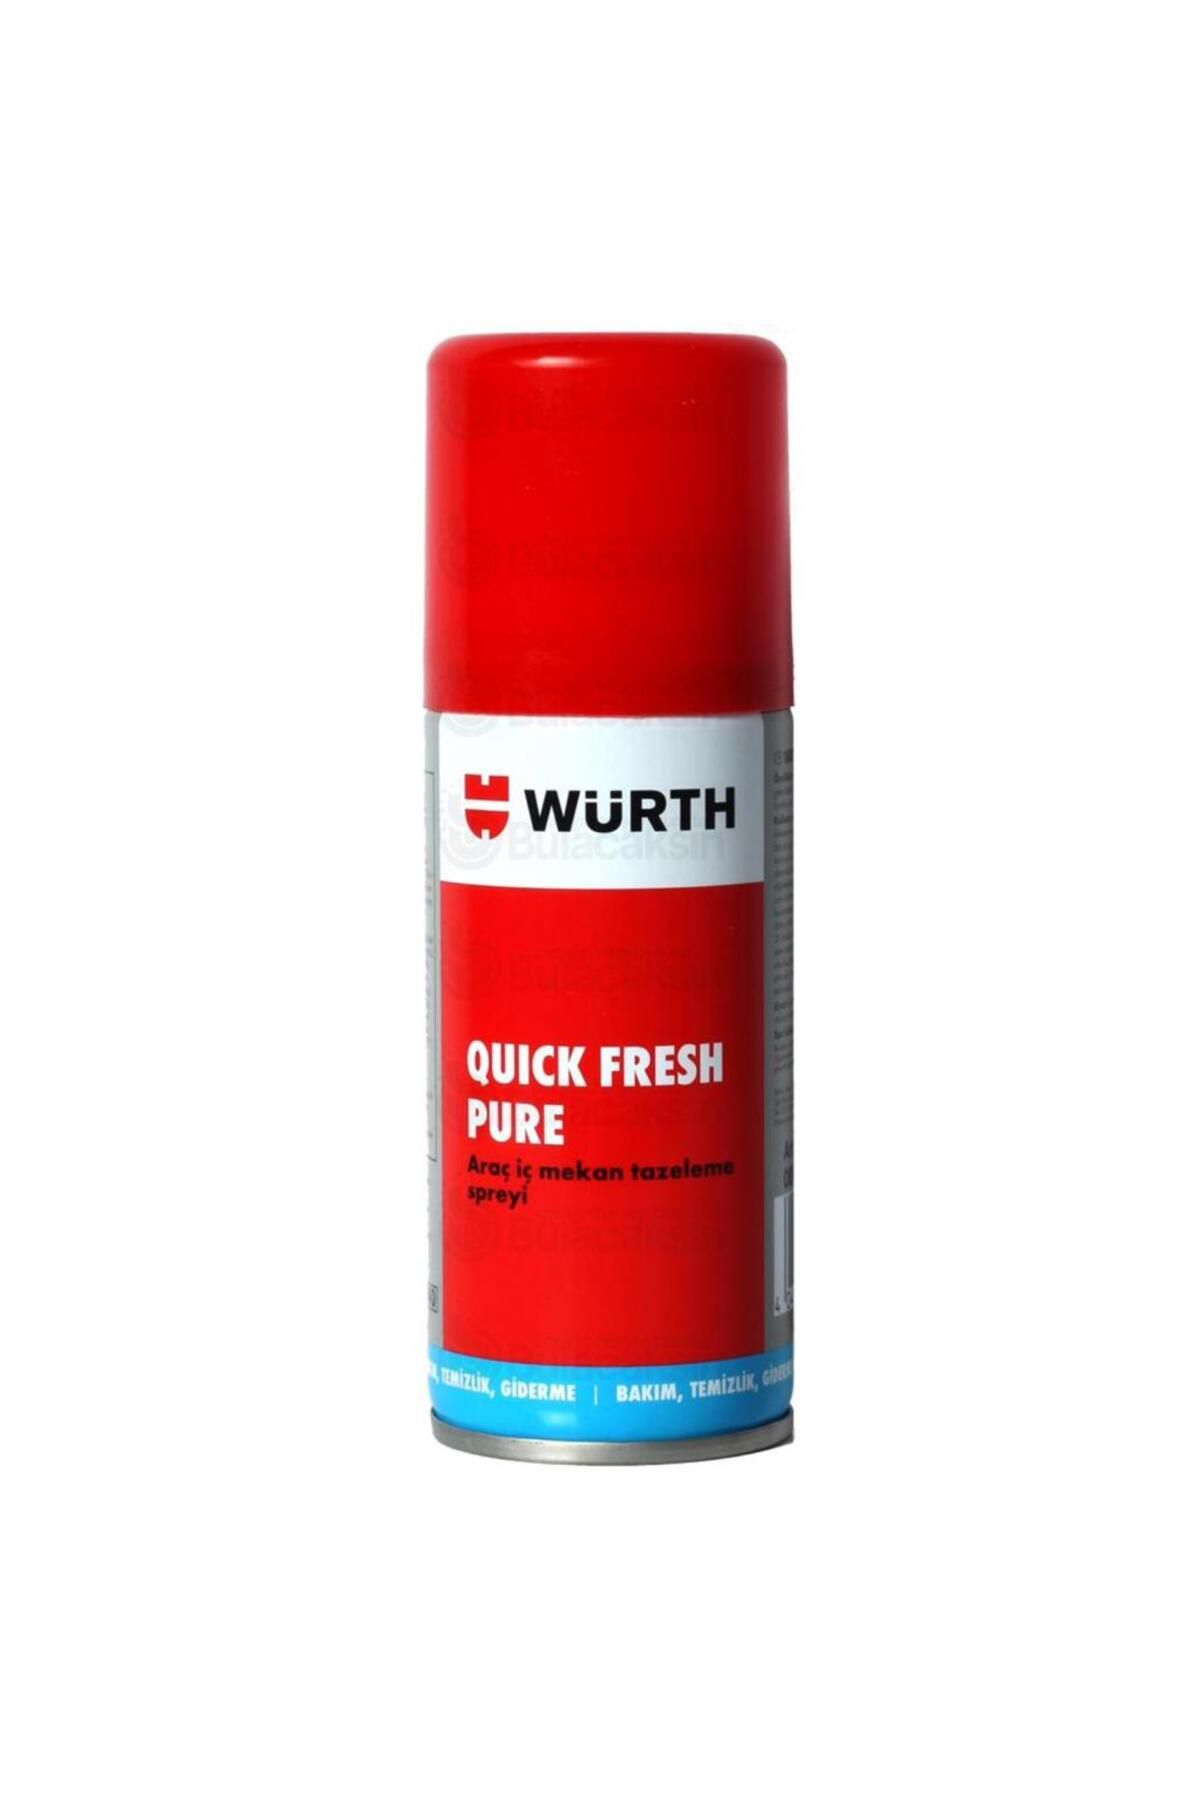 Würth Quick Fresh Araç Içi Tazeleme Spreyi 100 ml - Koku Bombası